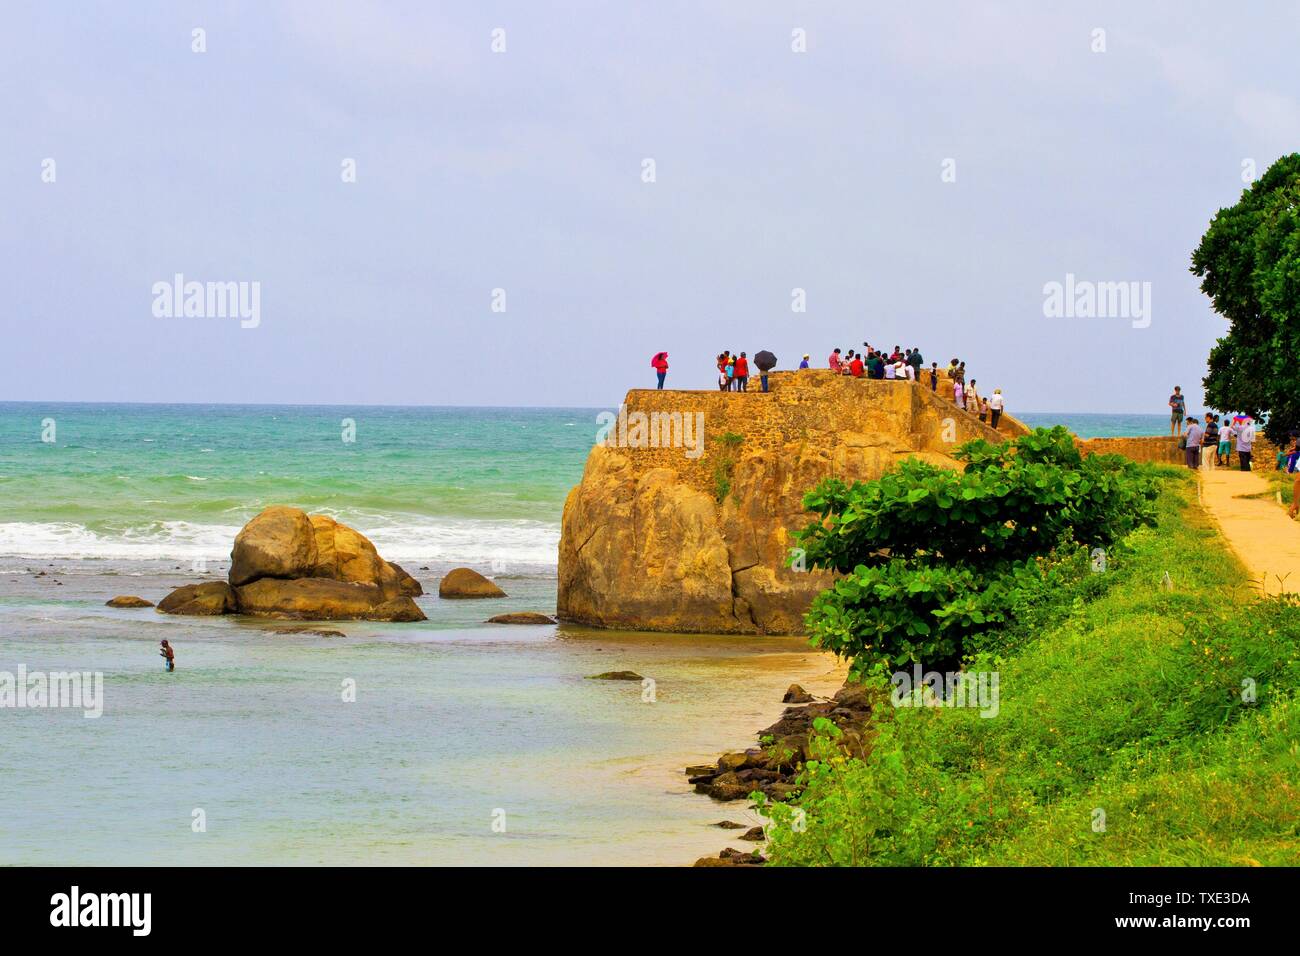 Menschen auf der Promenade in holländischen Fort, Galle, Sri Lanka Stockfoto